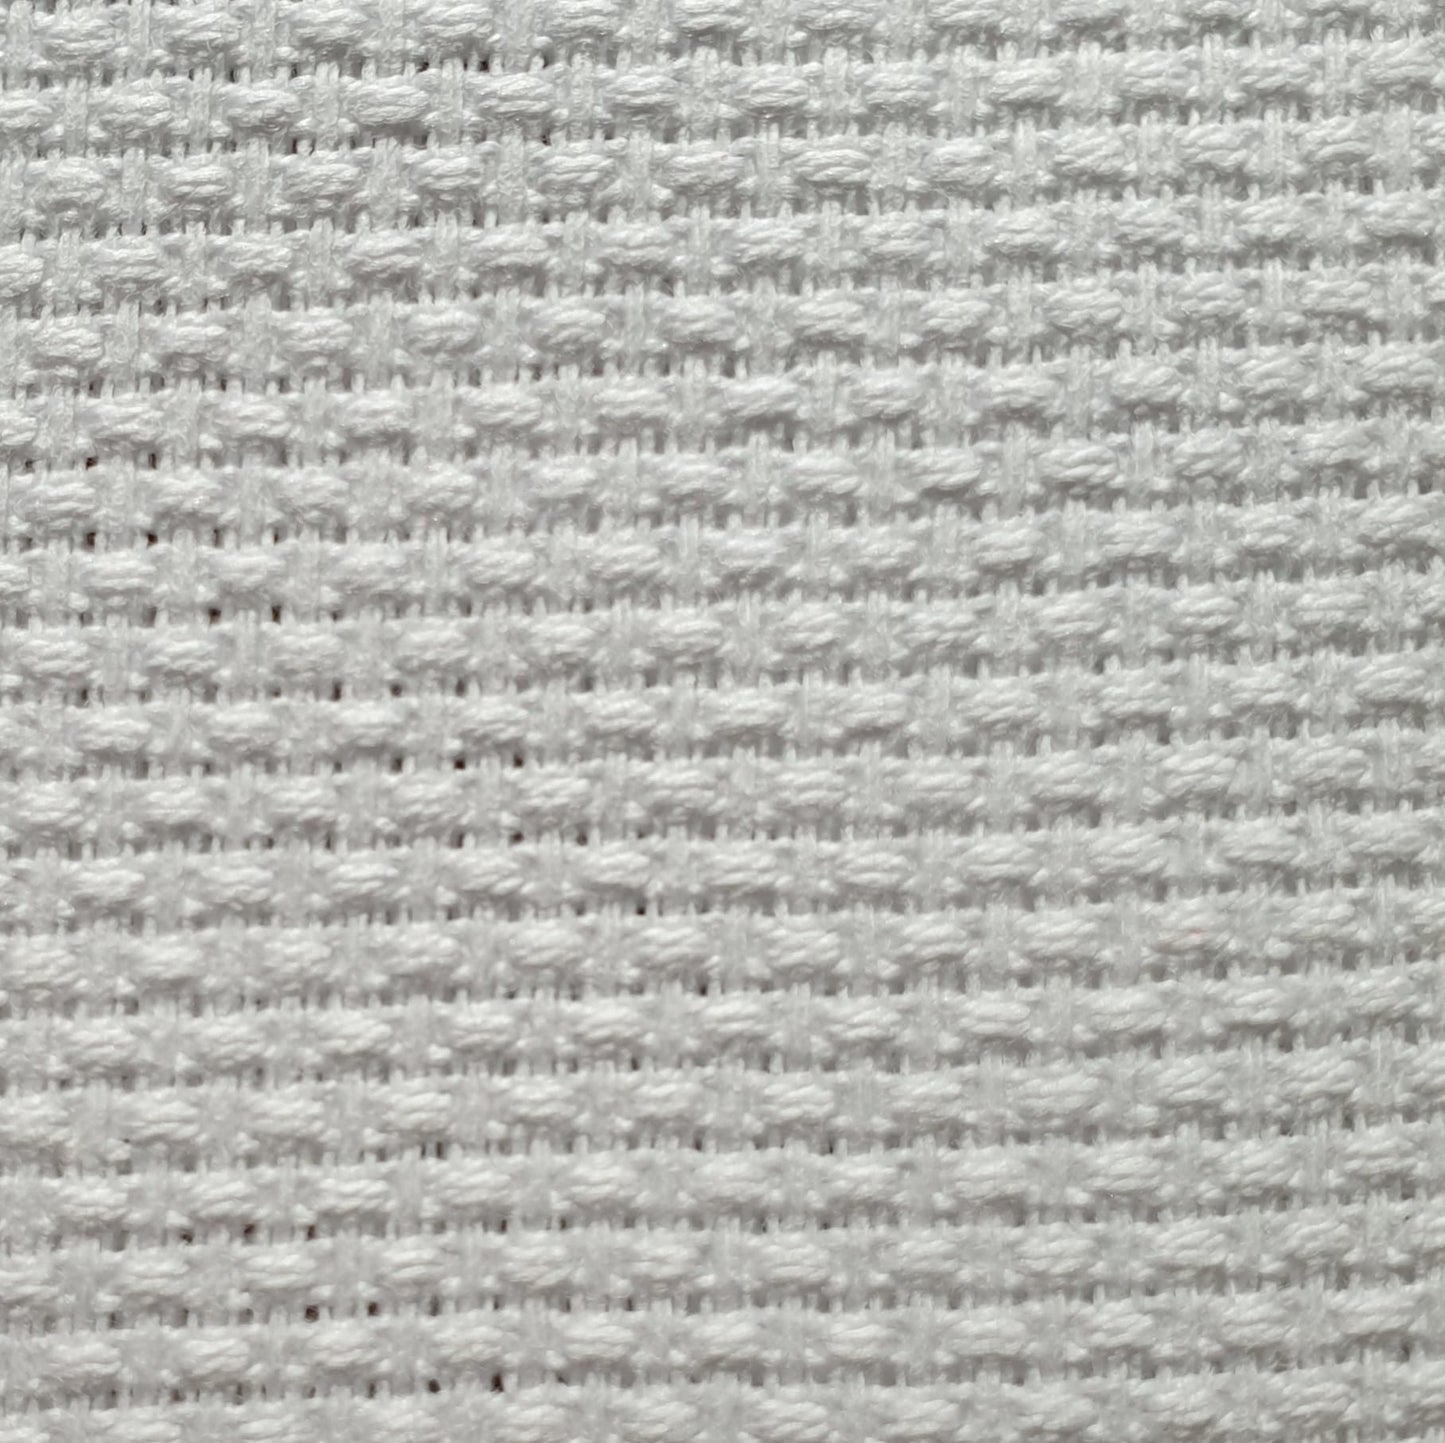 Tessuto per Punto Croce | 170cm x 100cm | 100% cotone | |44 fori 11 ct. 4.4 punti per centimetro | made in italy | tela aida per ricamo.